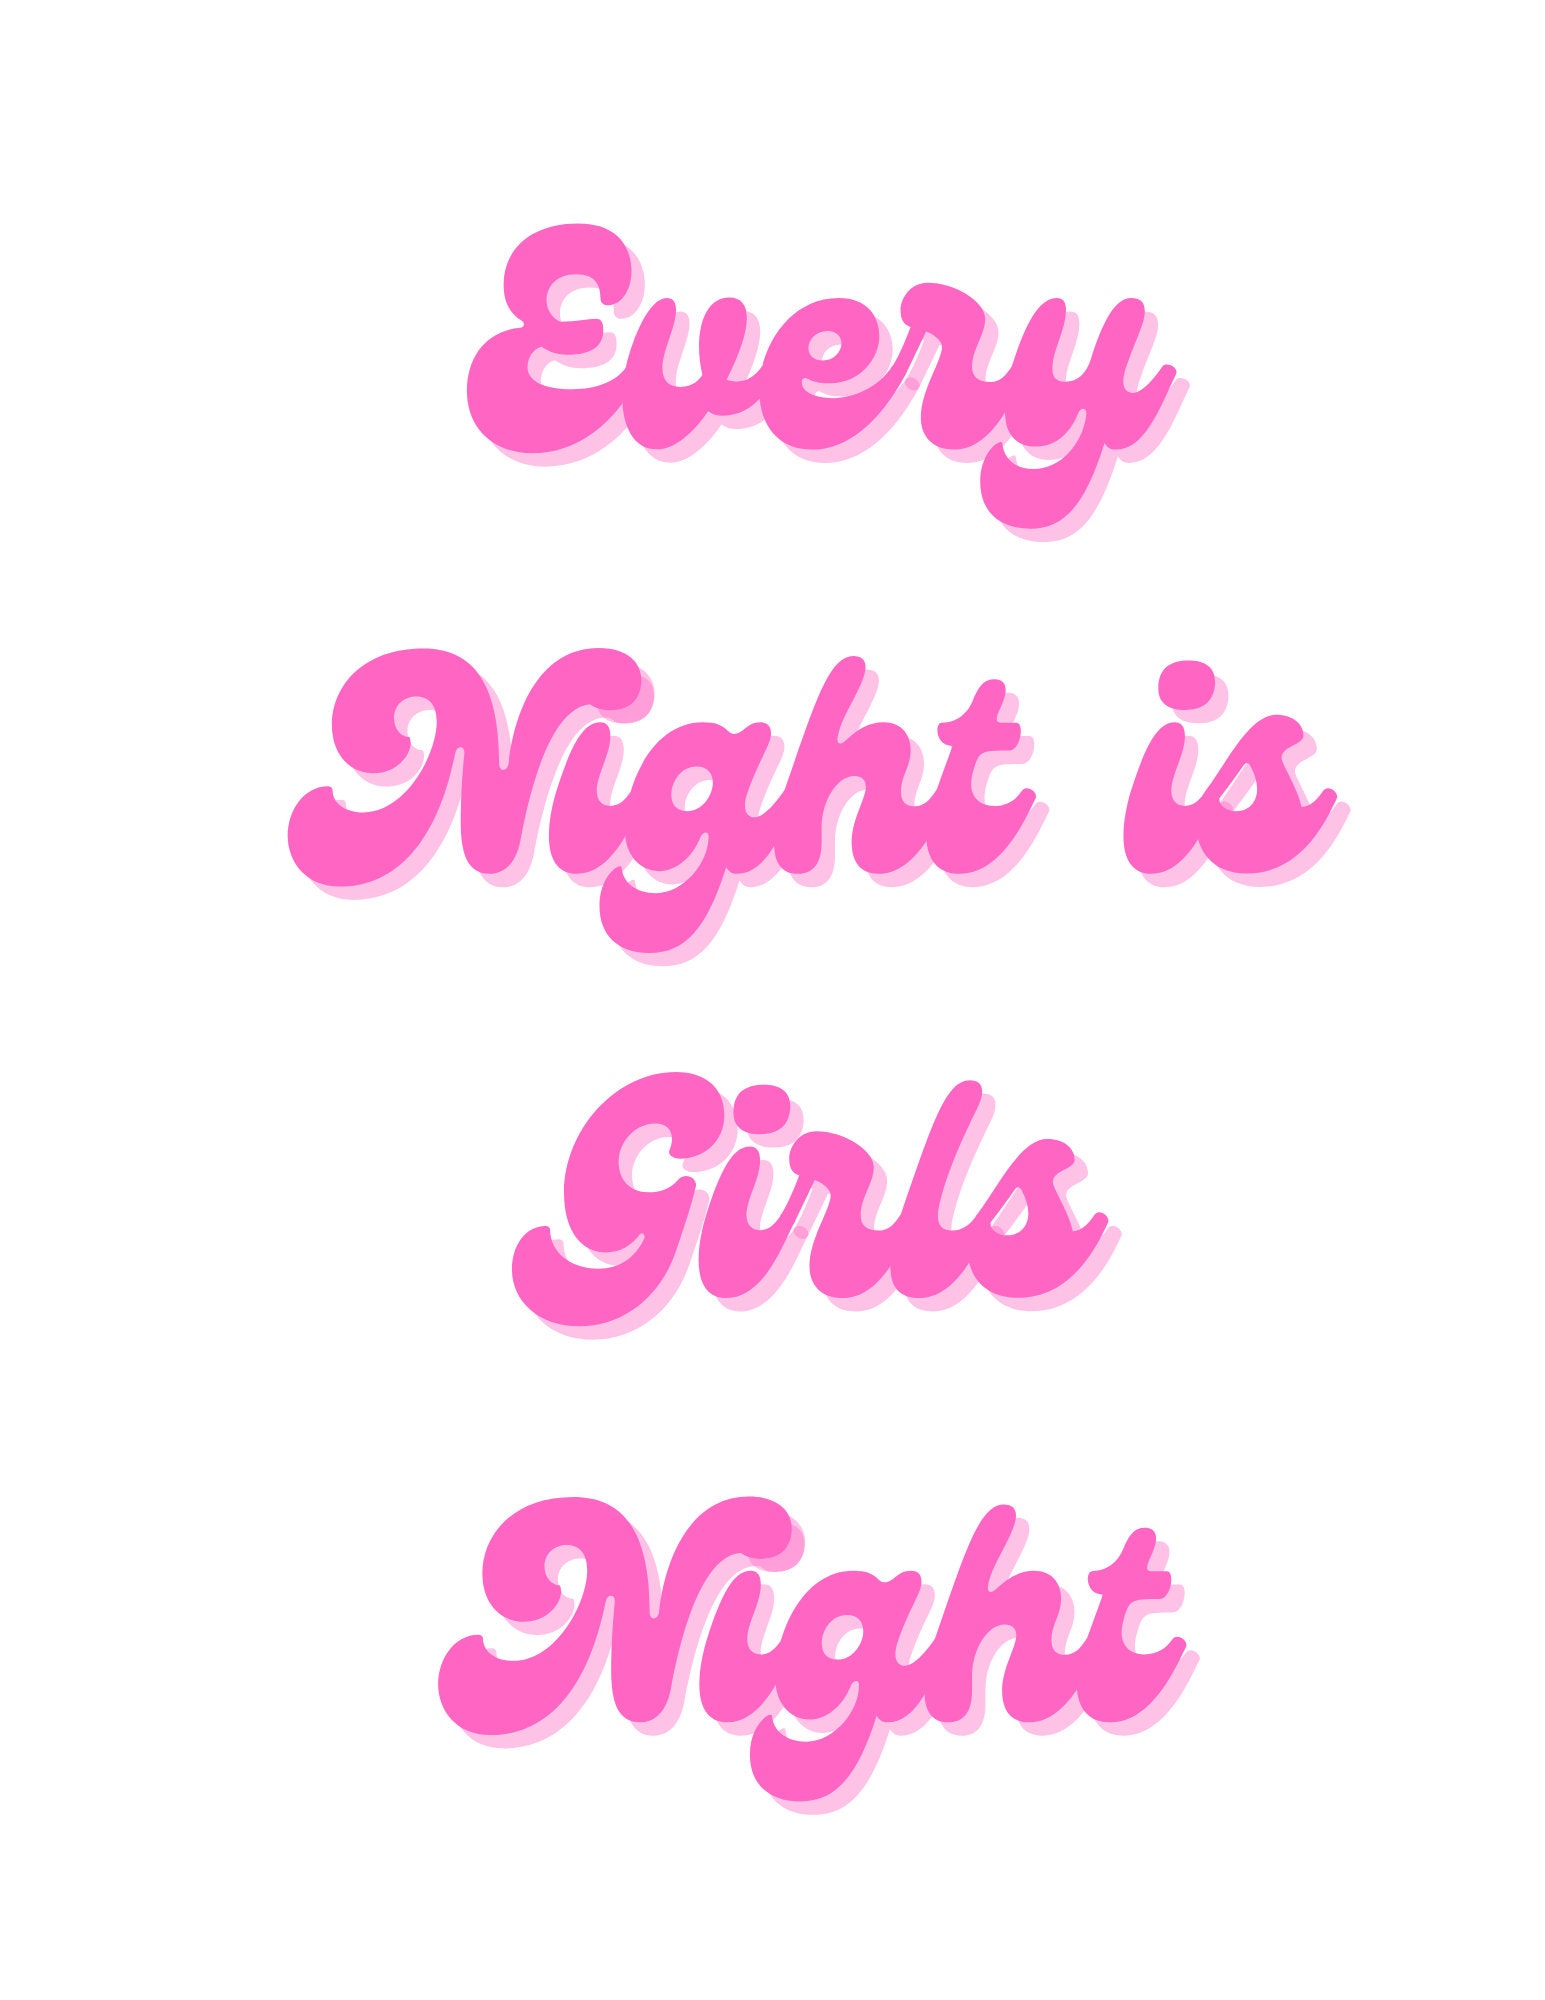 Girls night Svg, Girls night Cricut,Girls night Png, Girls night Vector  clipart, Girls night Silhouette,Girls night Cut, Girls night Print